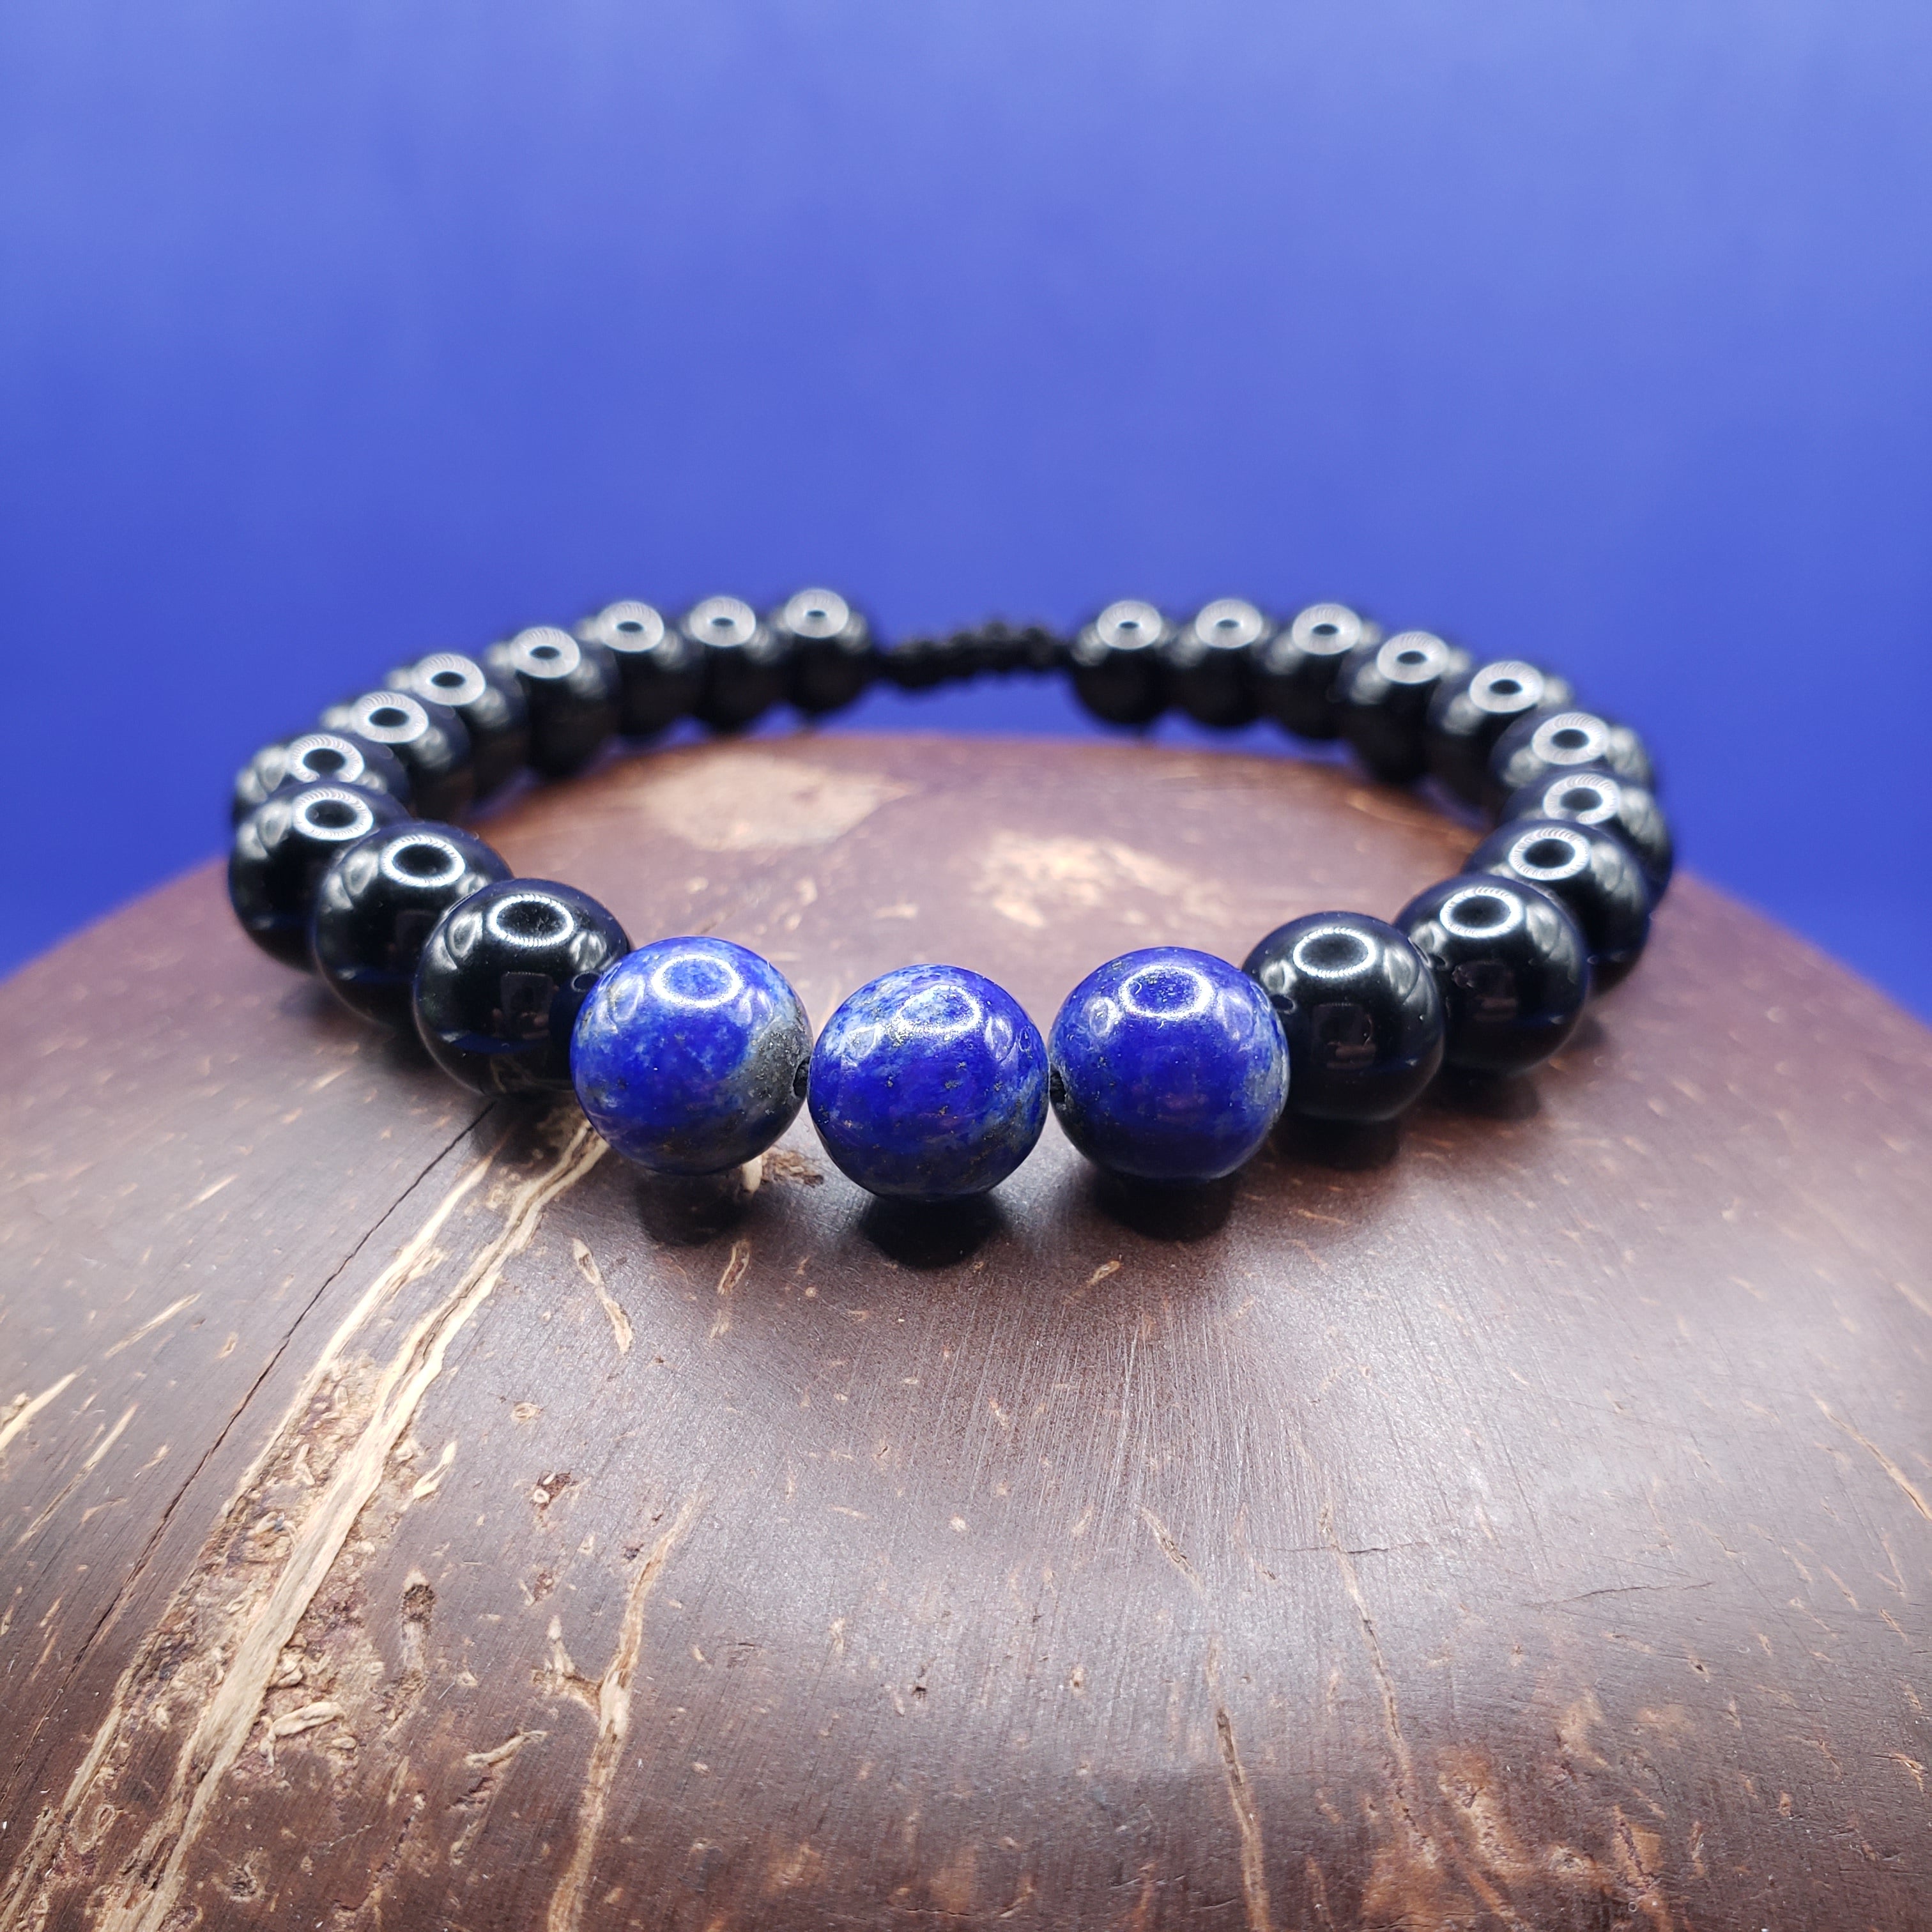 Buy Lapis Lazuli Necklace | Auroville.com